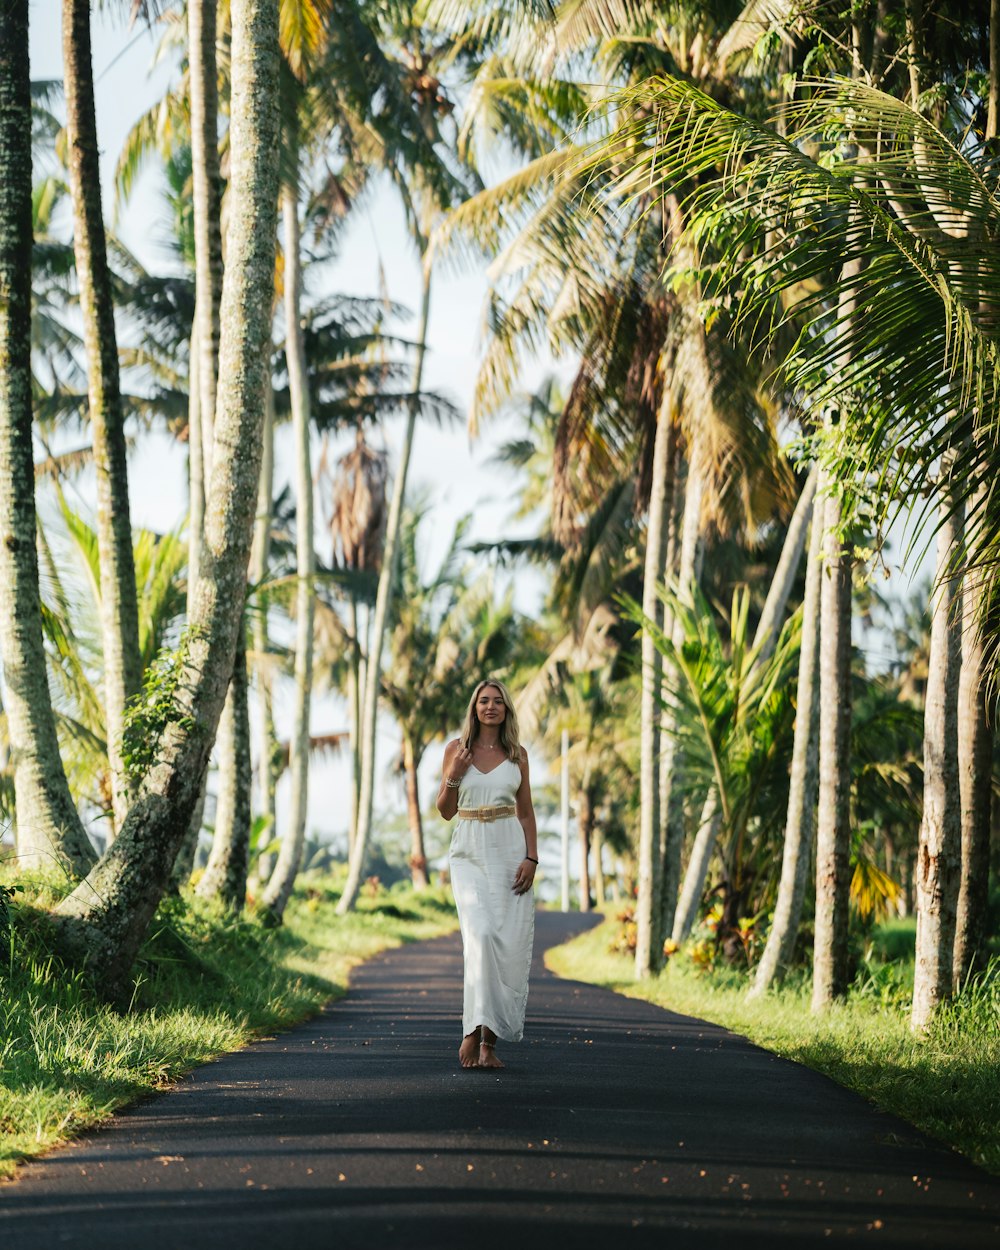 Une femme en robe blanche marchant sur une route